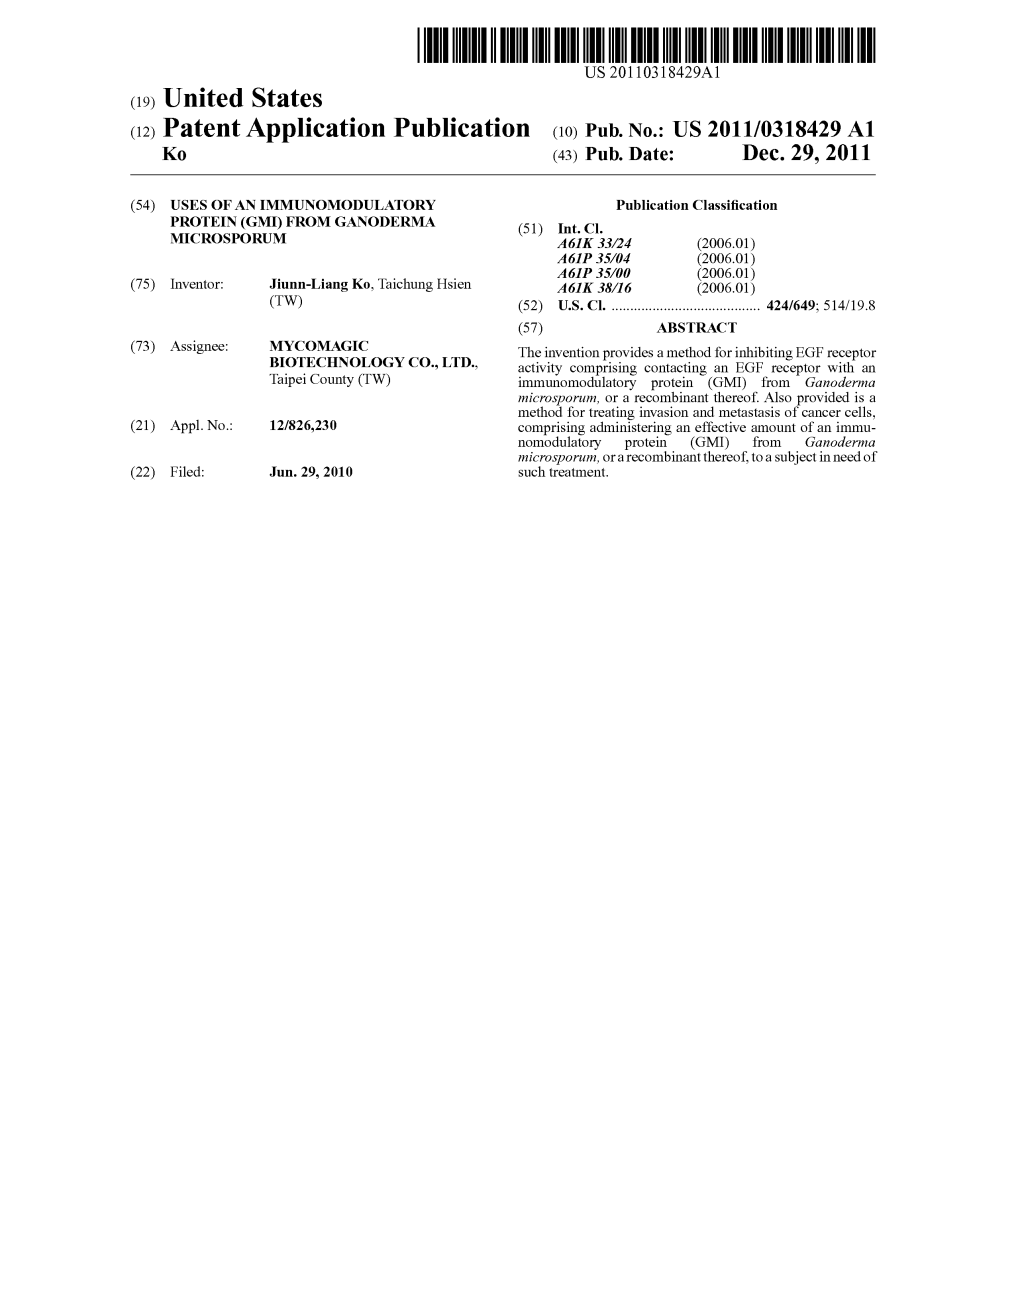 (12) Patent Application Publication (10) Pub. No.: US 2011/0318429 A1 K0 (43) Pub